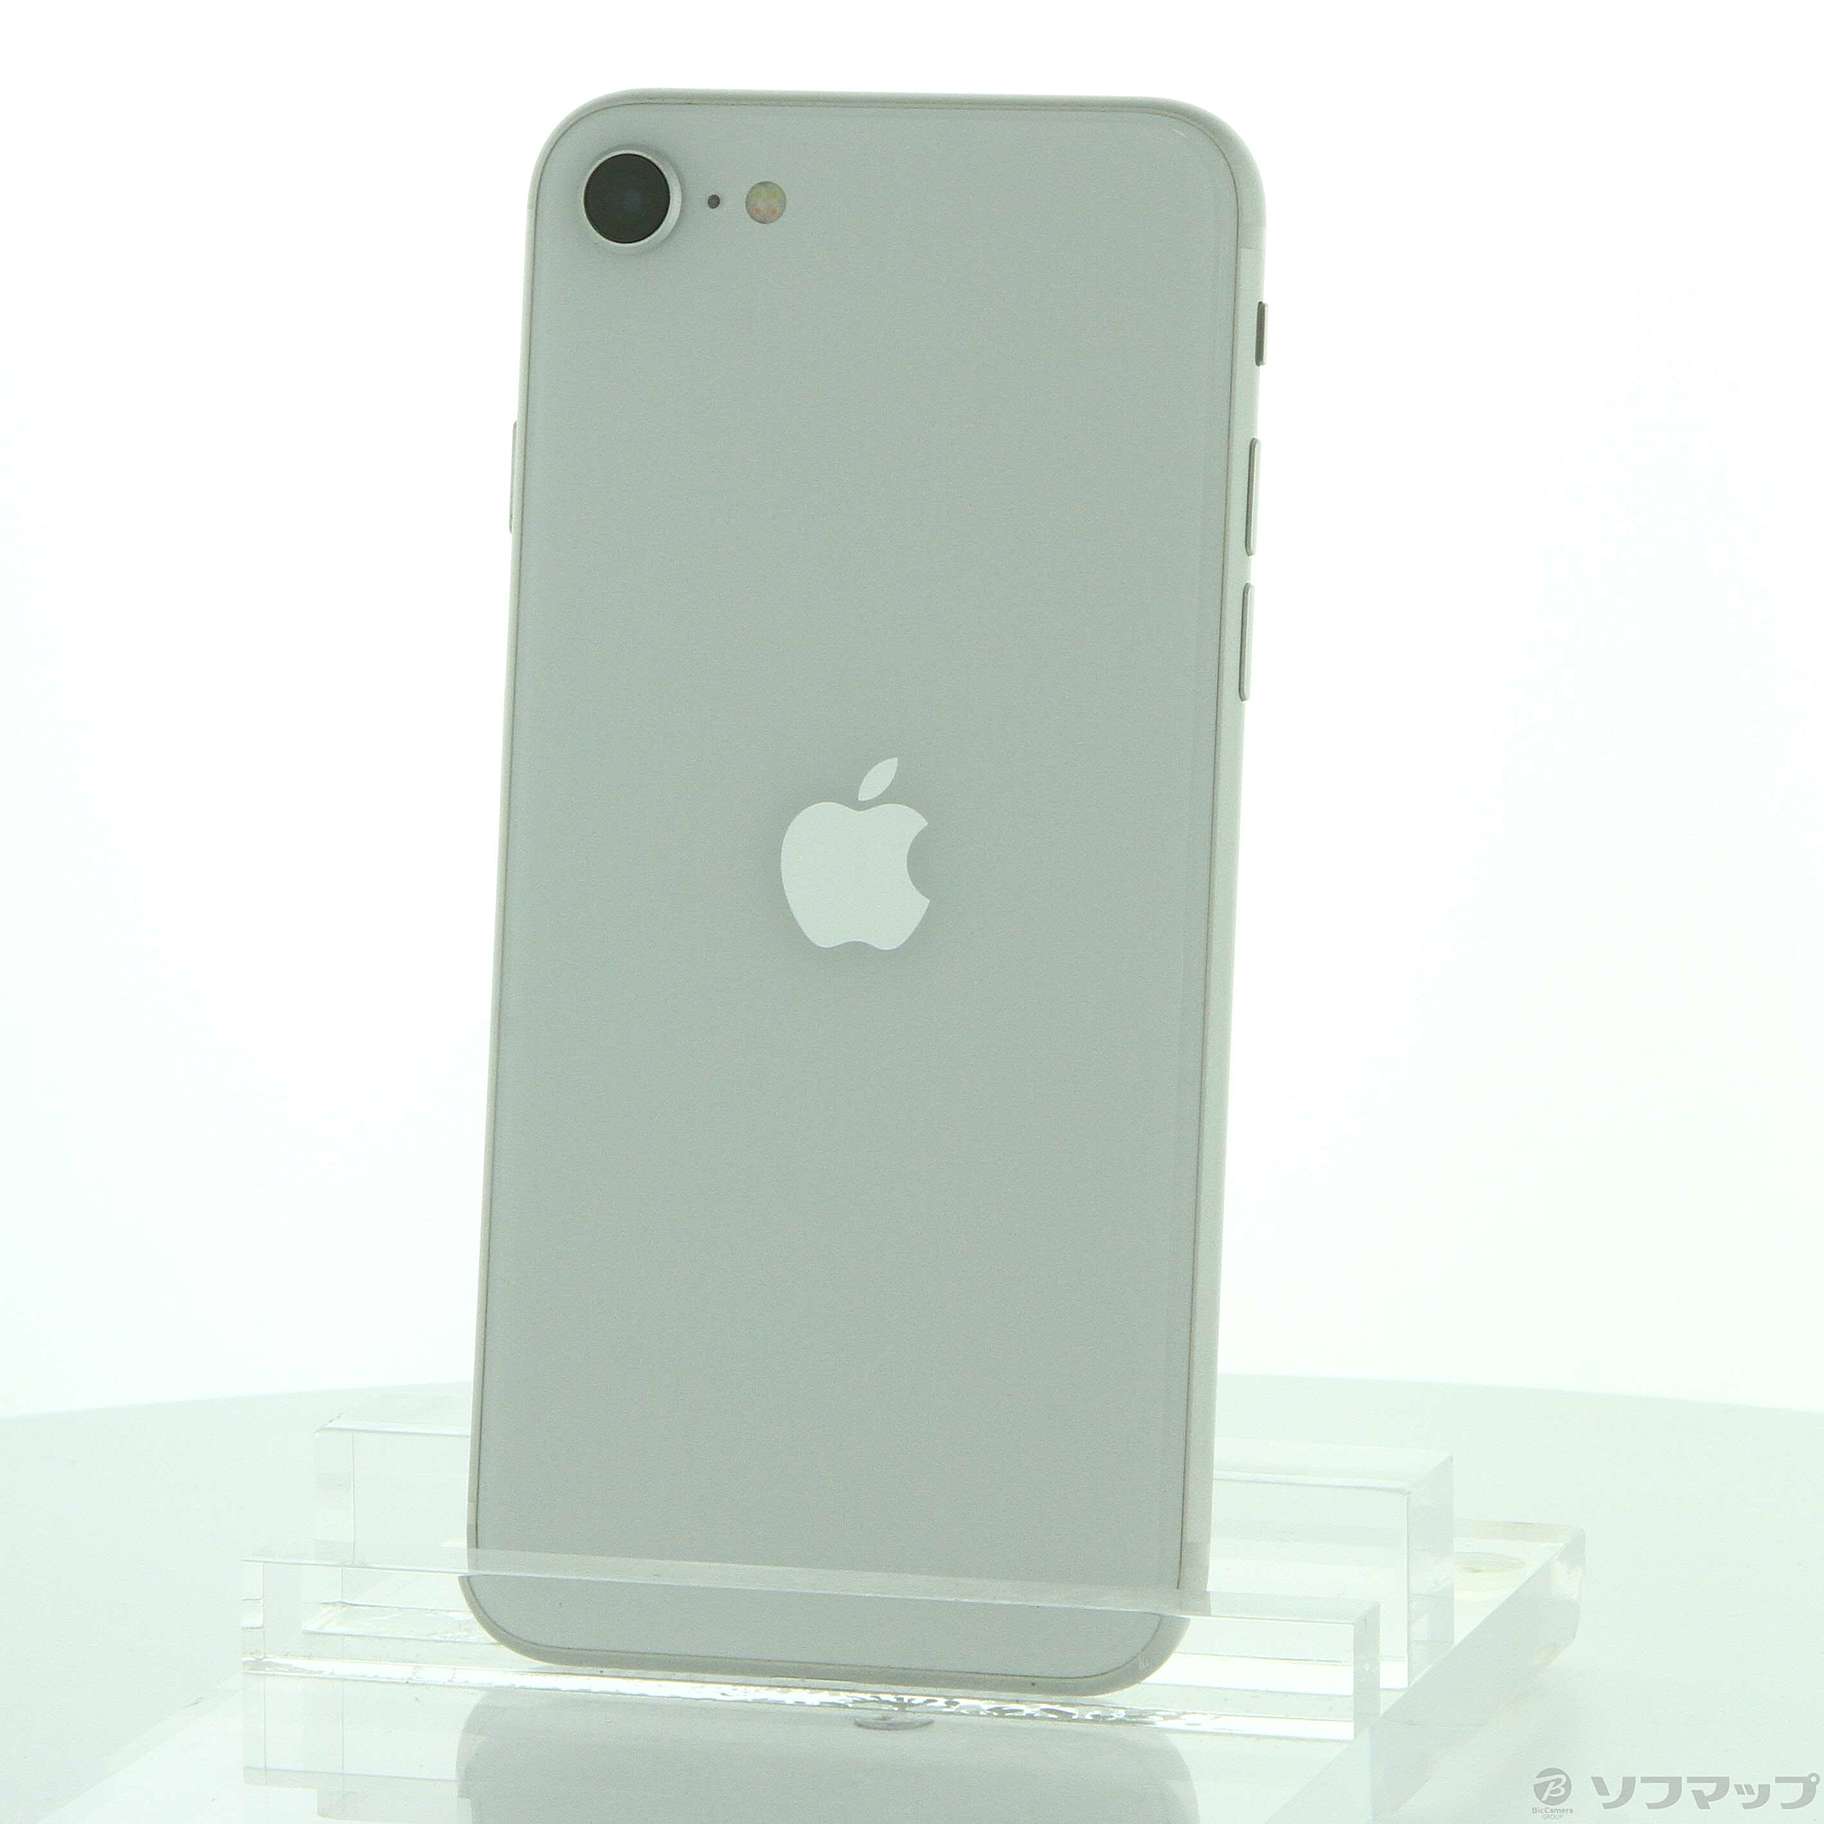 10,045円Apple iPhone SE 128GB 第2世代ホワイト